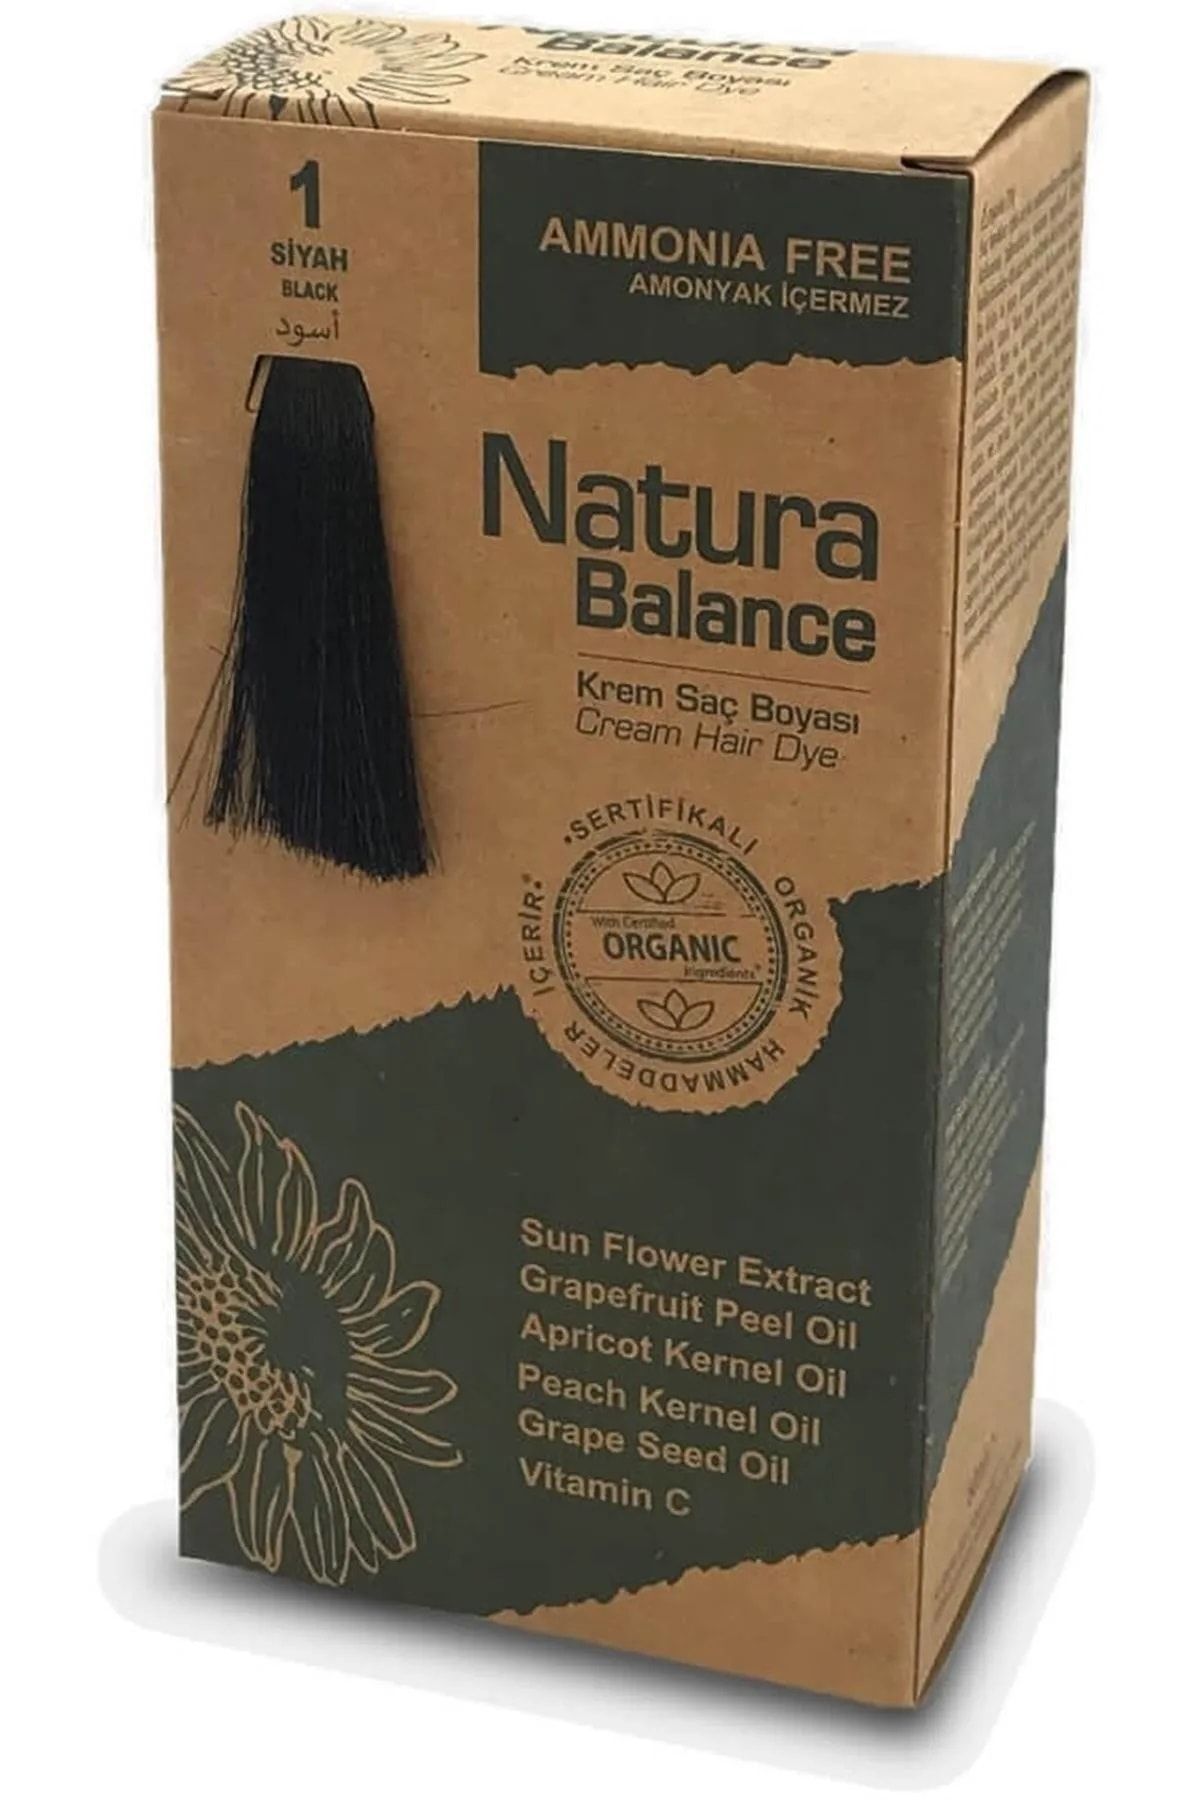 NATURABALANCE Natura Balance 1 Siyah Organik Krem Saç Boyası